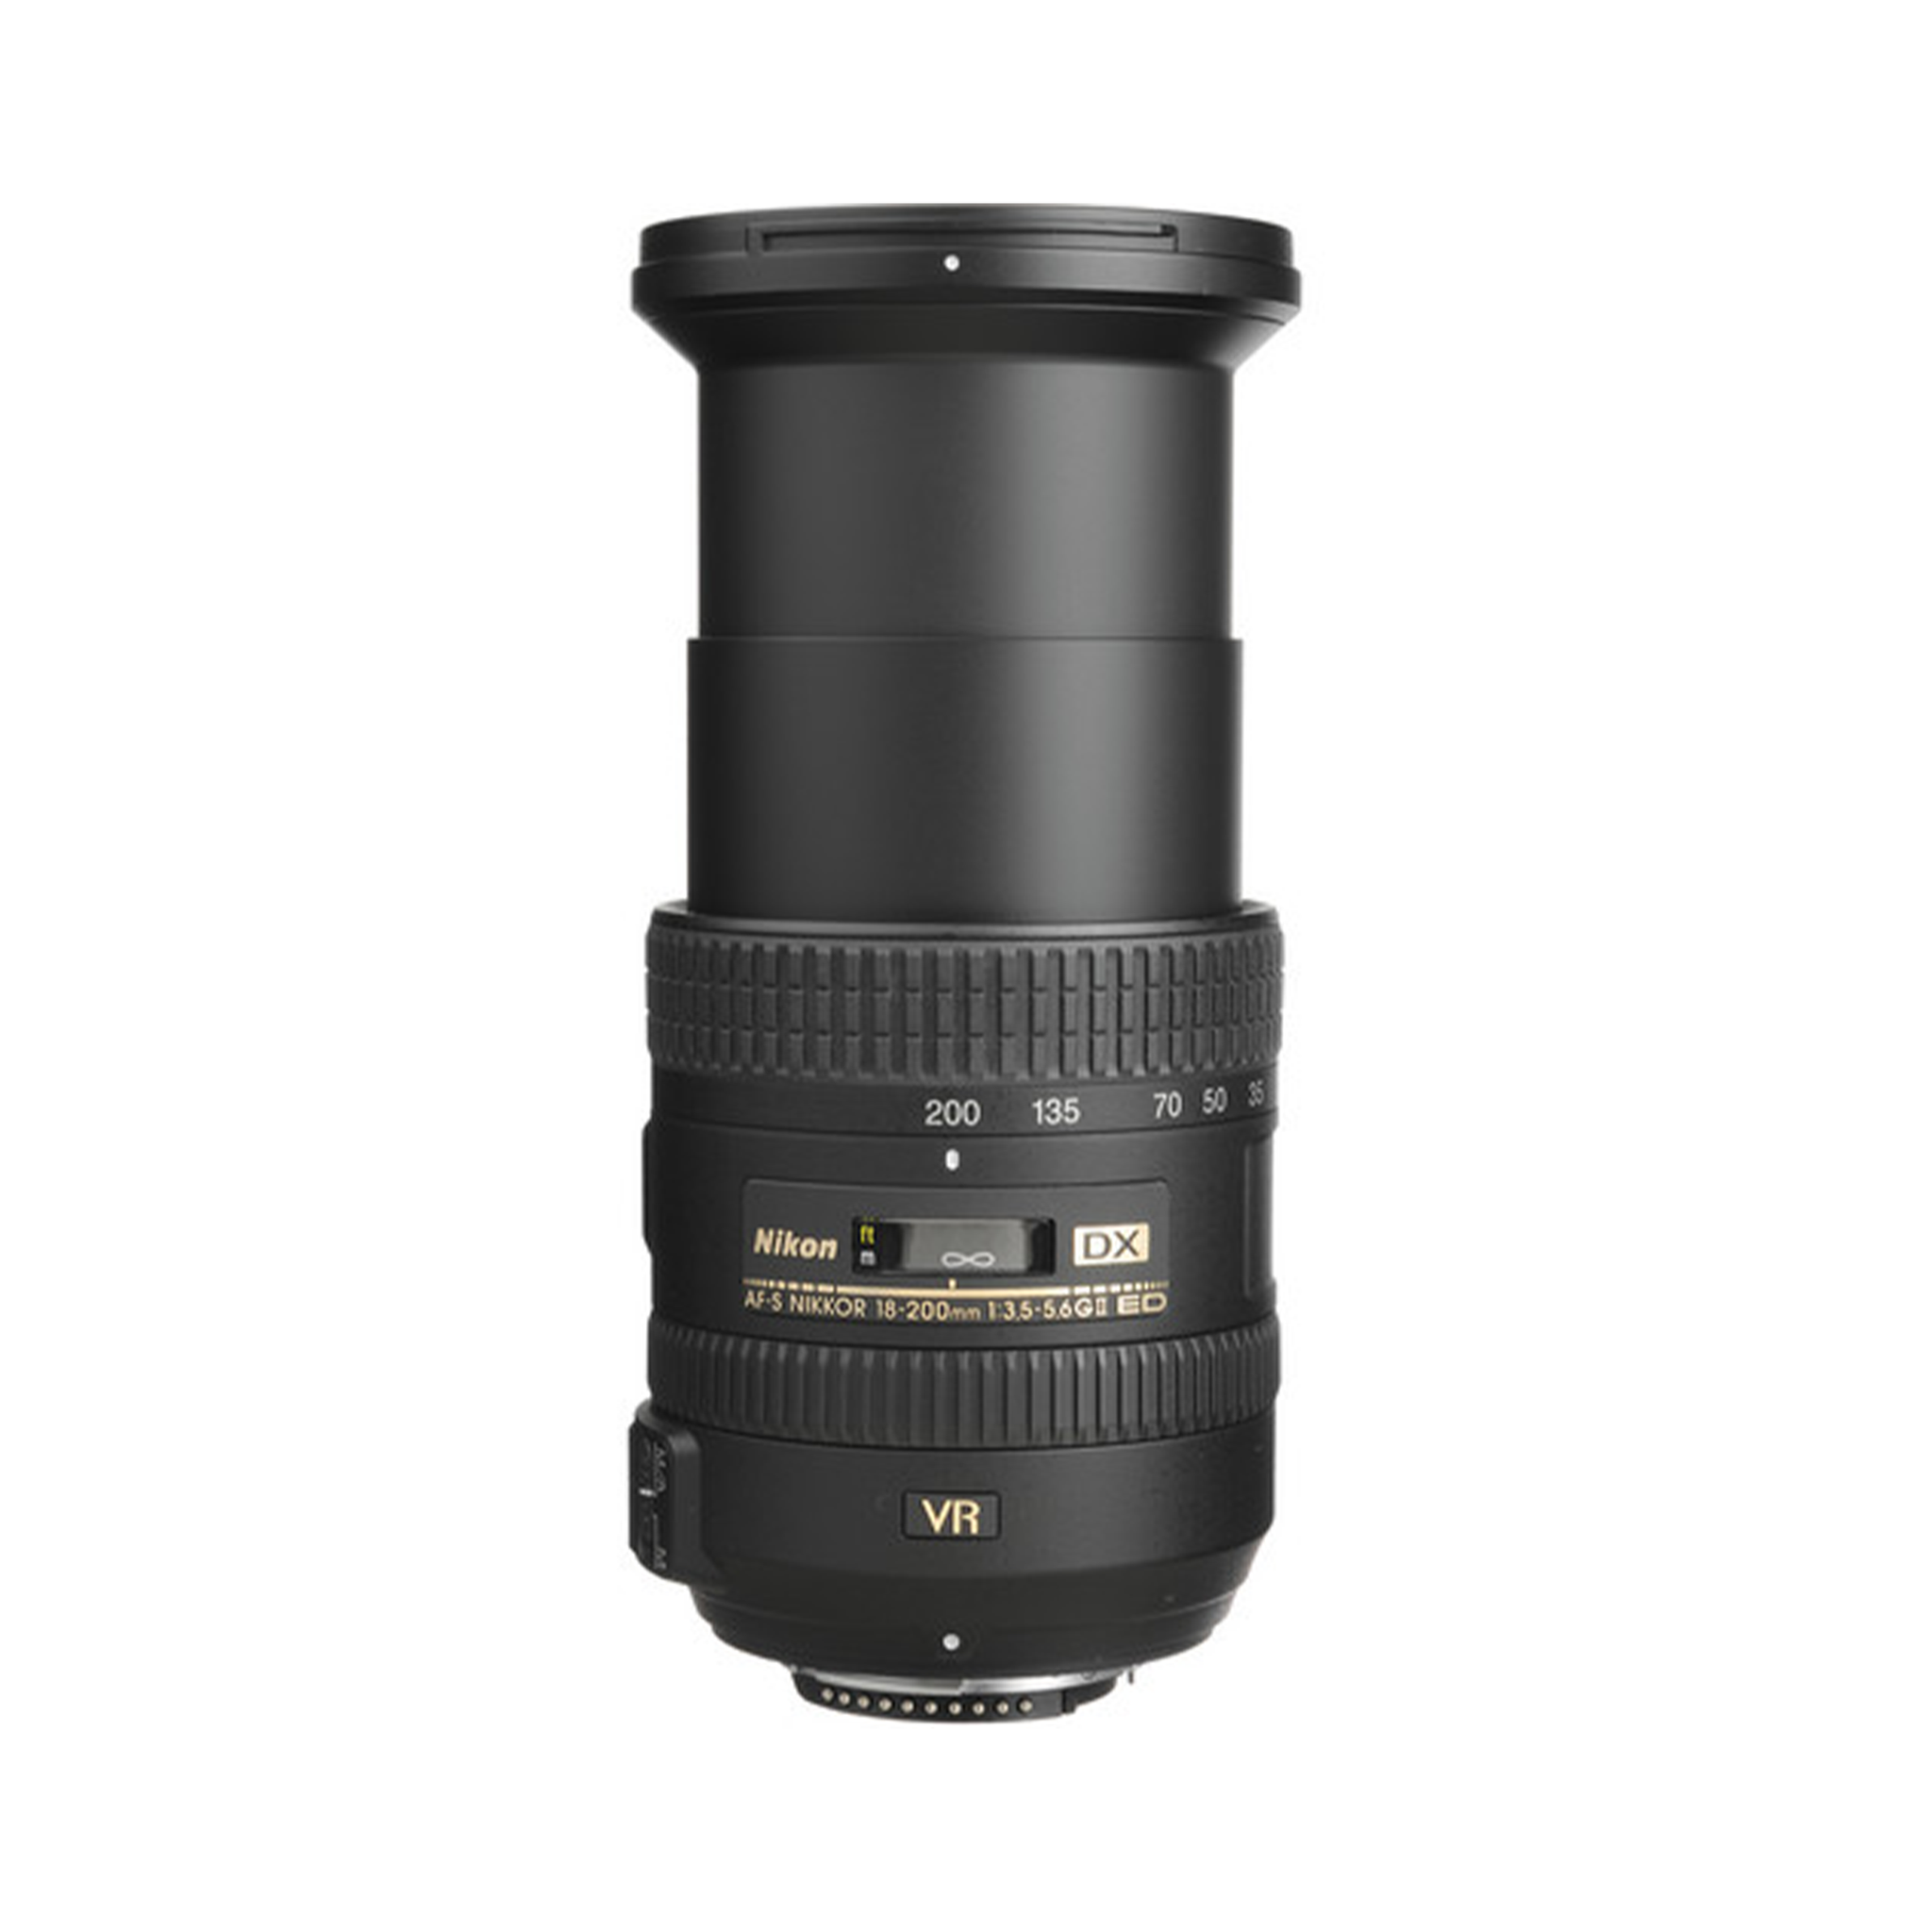 Nikon AF-S DX NIKKOR 18-200mm f/3.5-5.6G ED VR II Lens-Camera Lenses-futuromic